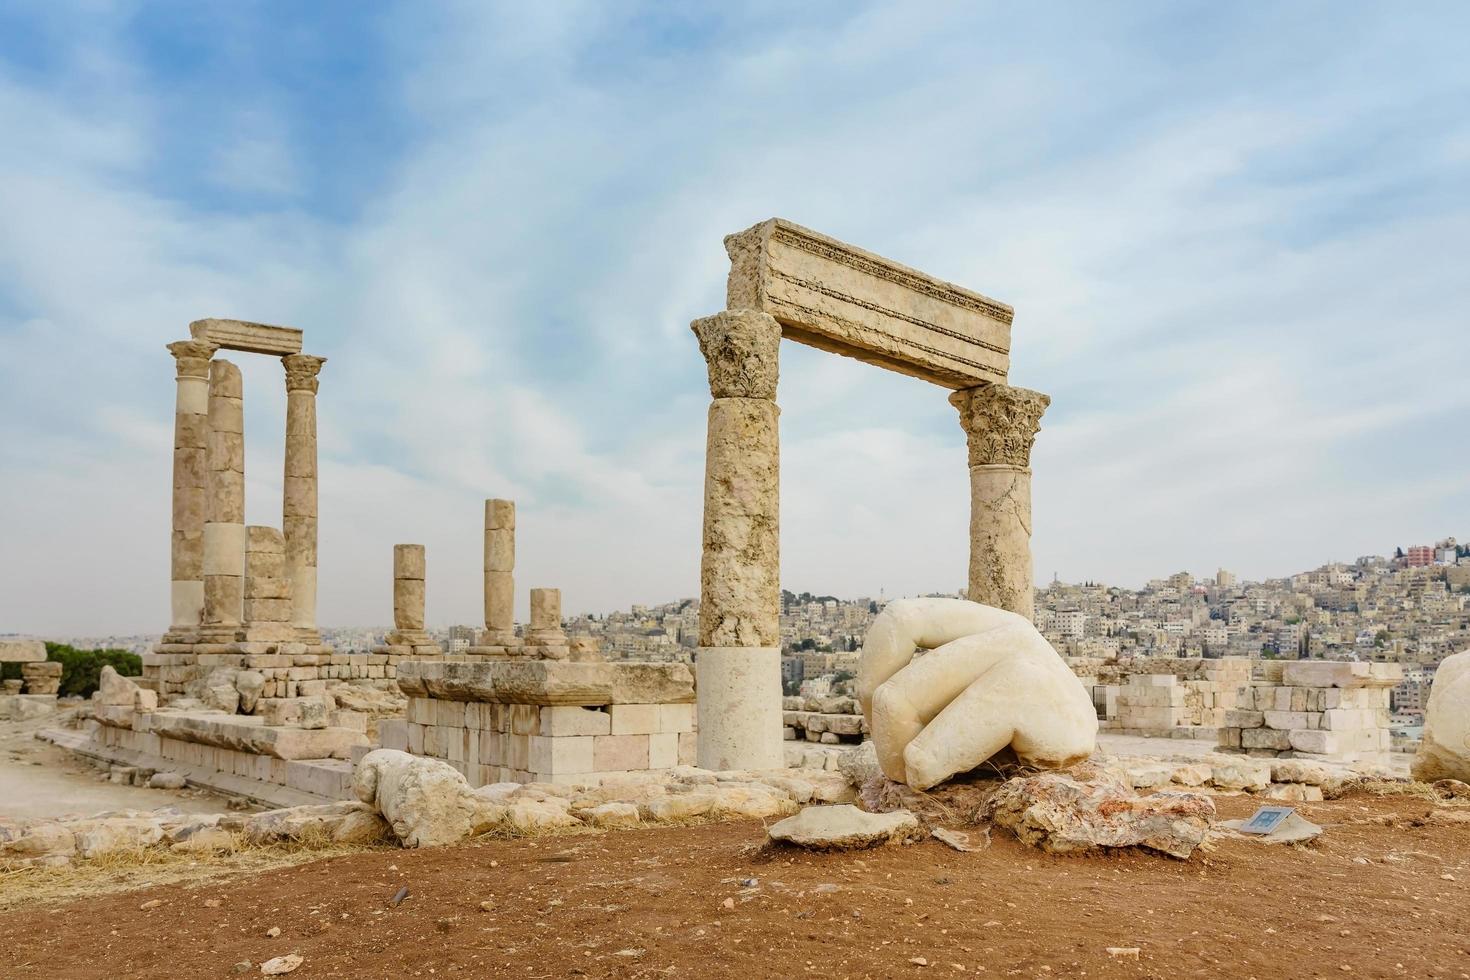 Templo de Hércules, columnas corintias romanas en la colina de la ciudadela en Ammán, Jordania foto